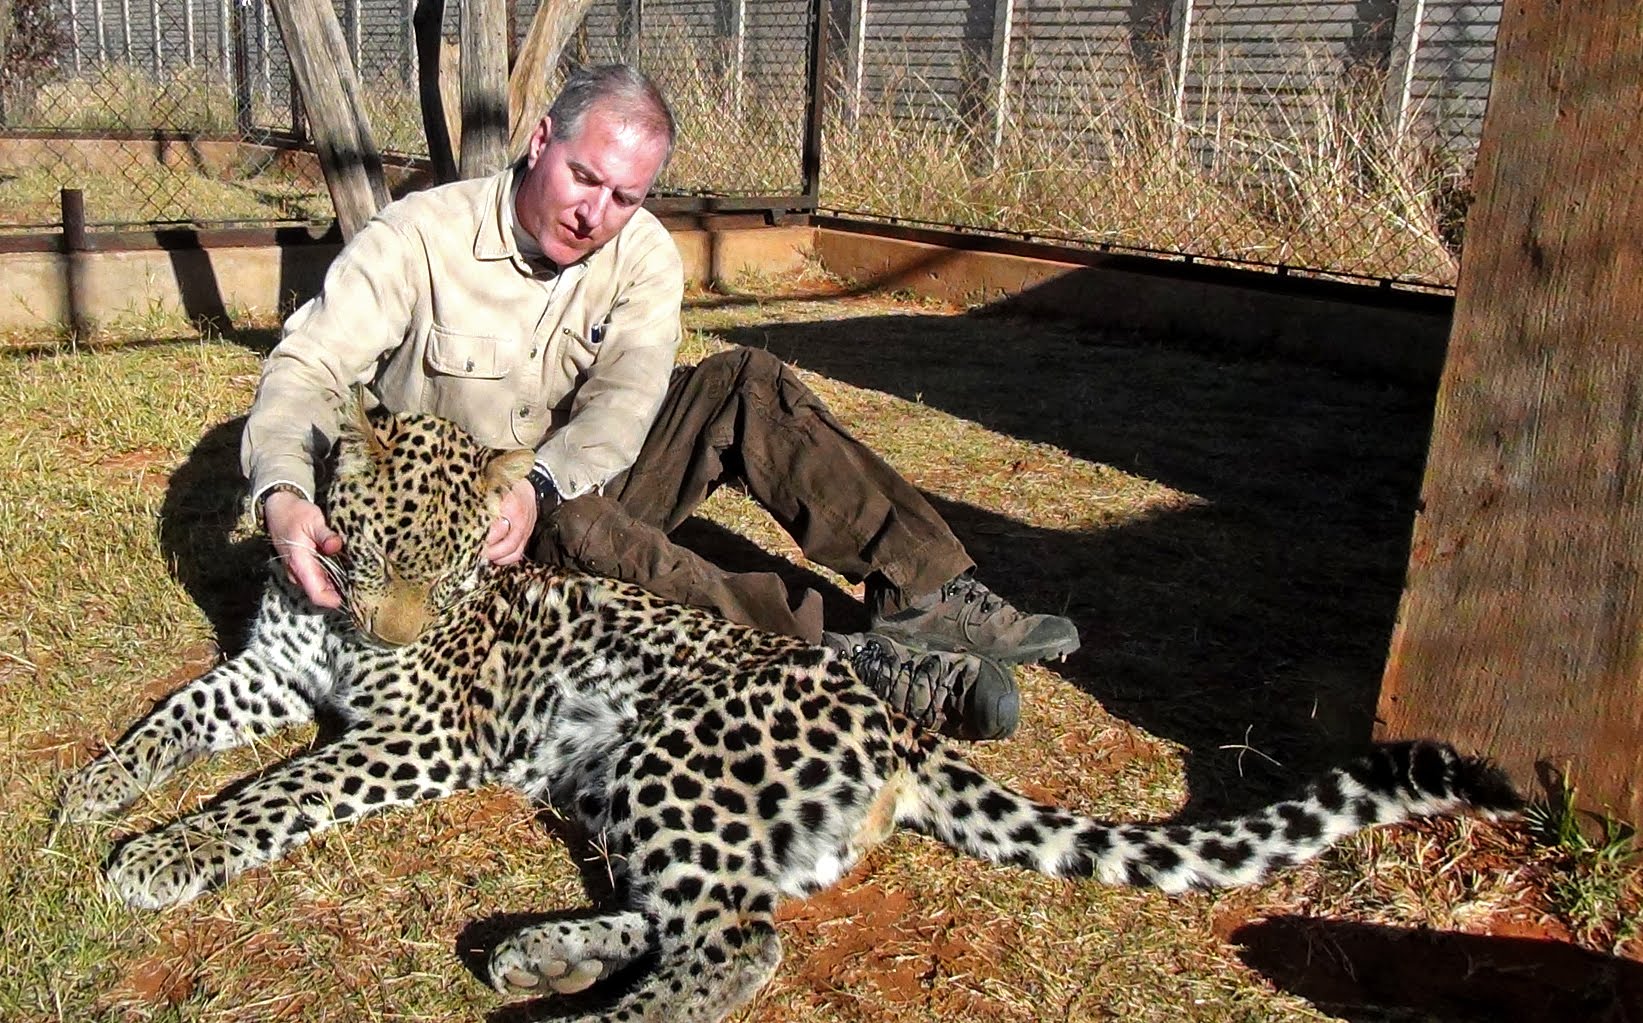 Mari Bermain Serangan Dengan A Spotted Afrika Leopard Cat - Menampilkan Perilaku Fur Pola & Pengayaan . Dolph C. Volker